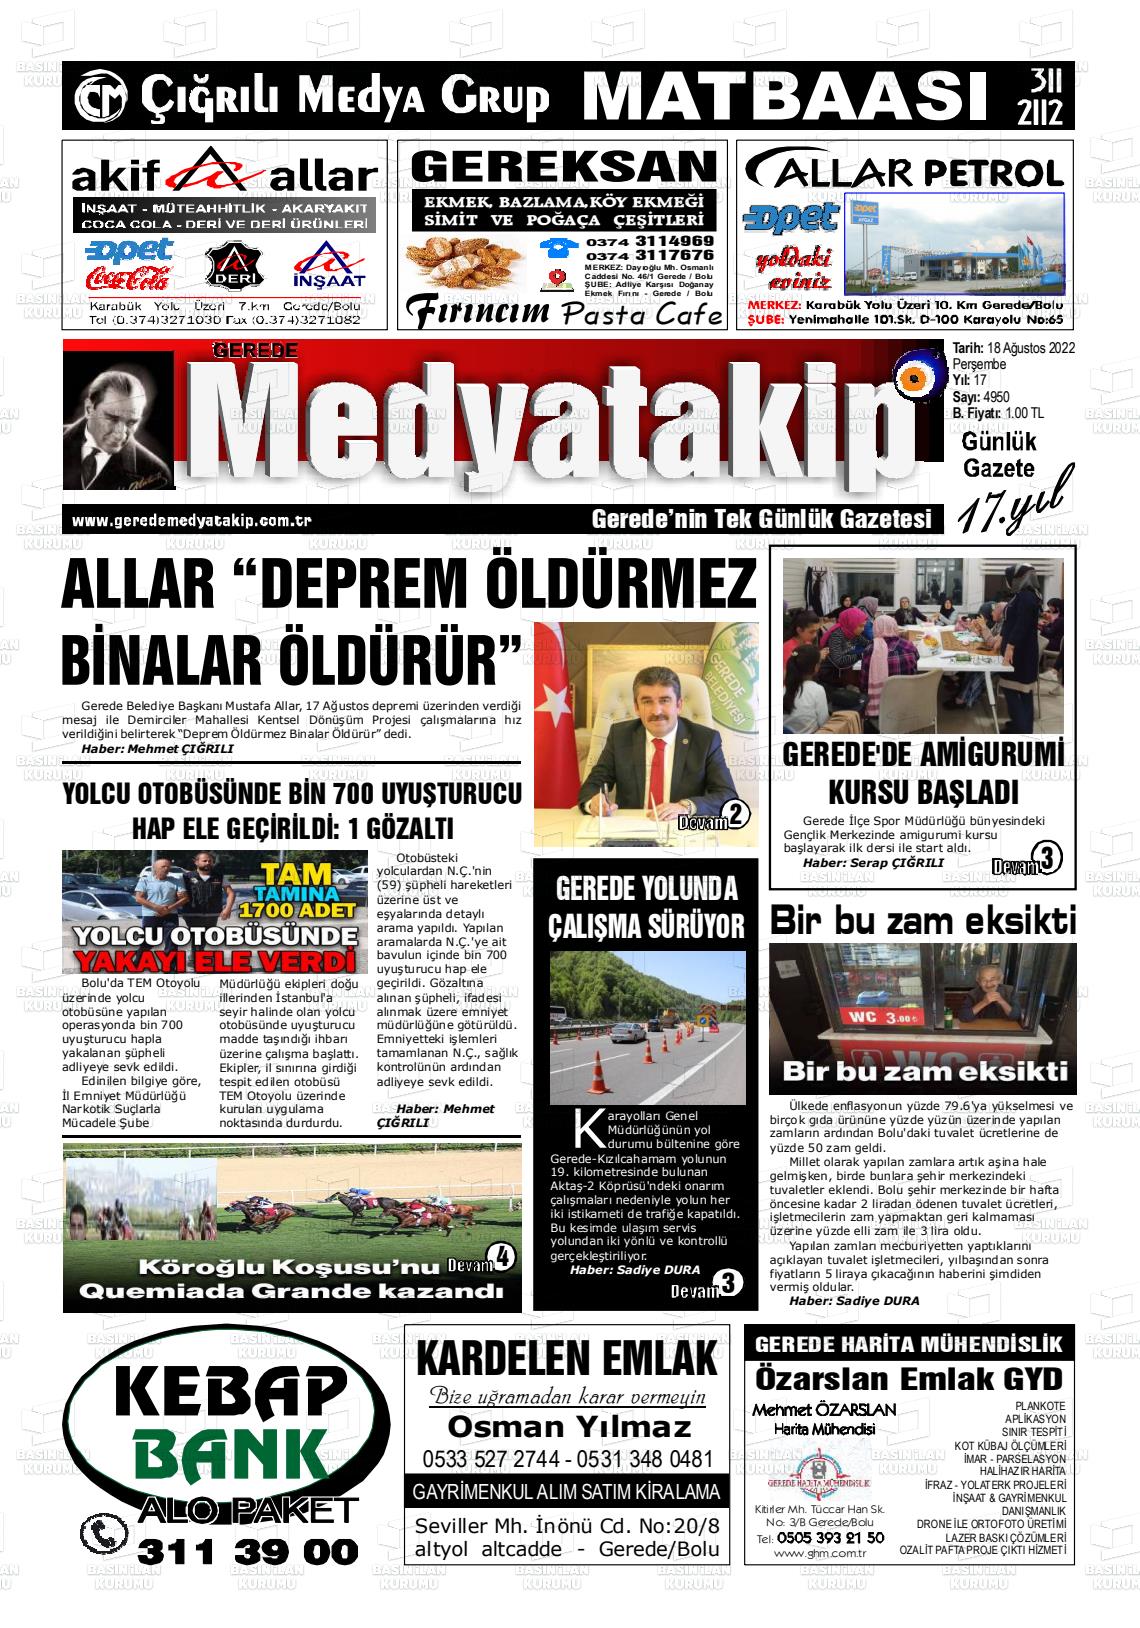 18 Ağustos 2022 Gerede Medya Takip Gazete Manşeti